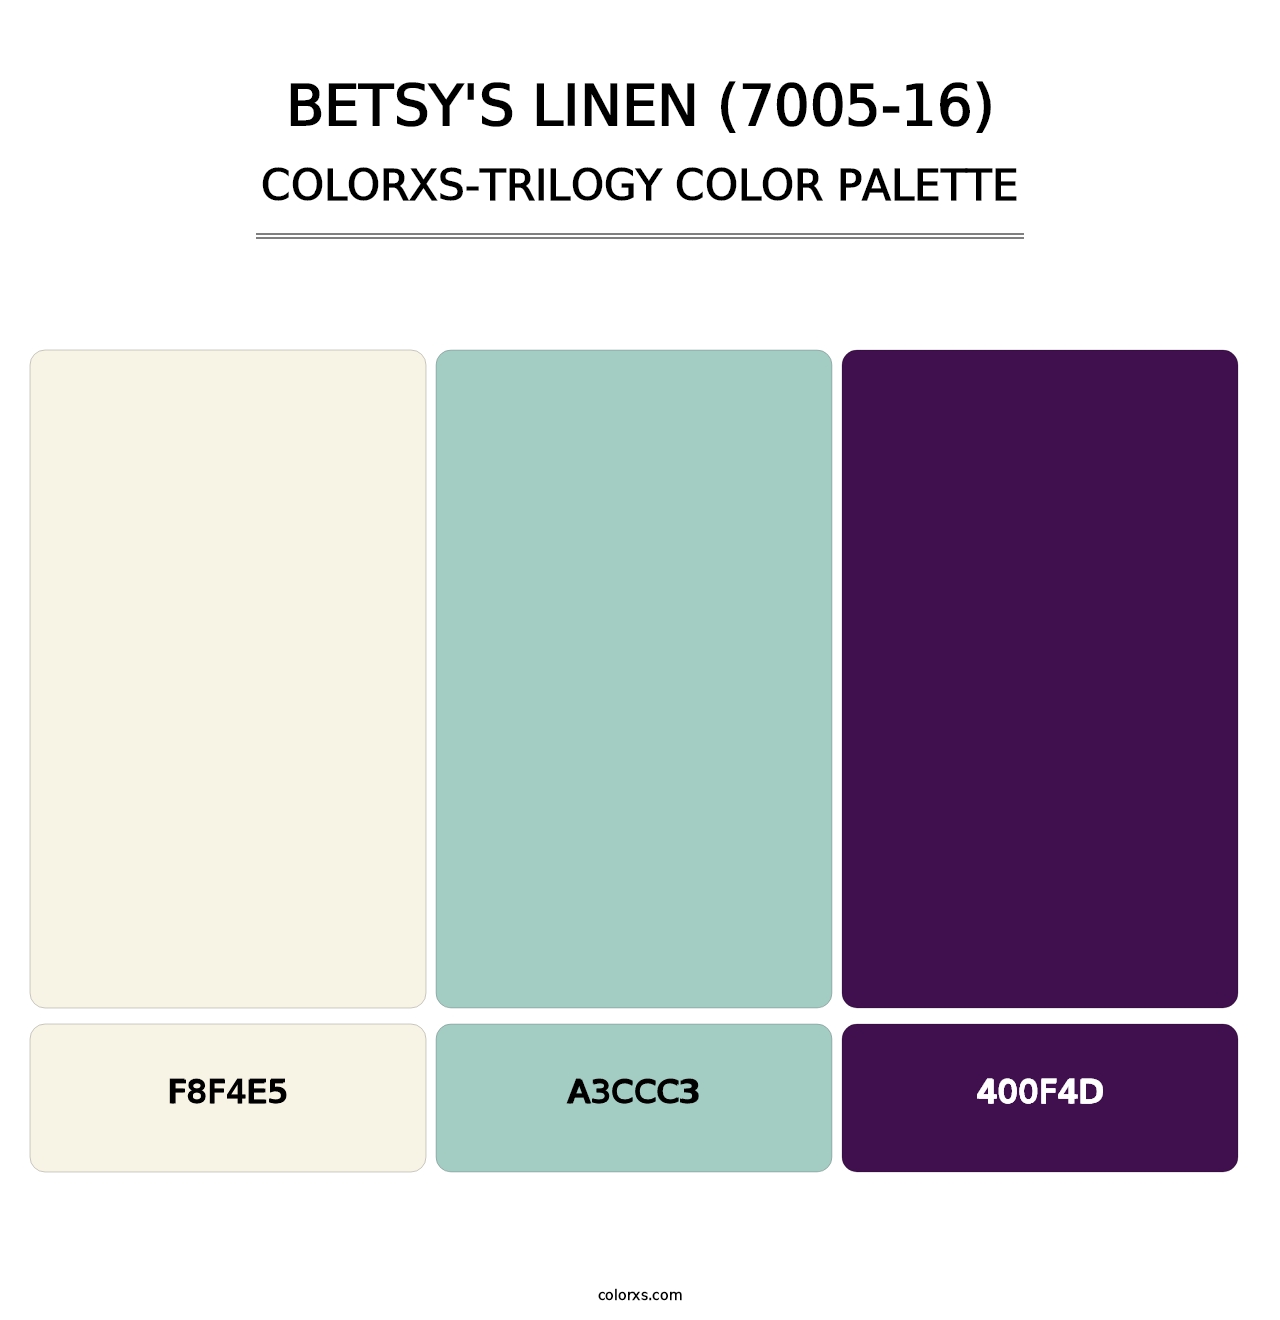 Betsy's Linen (7005-16) - Colorxs Trilogy Palette